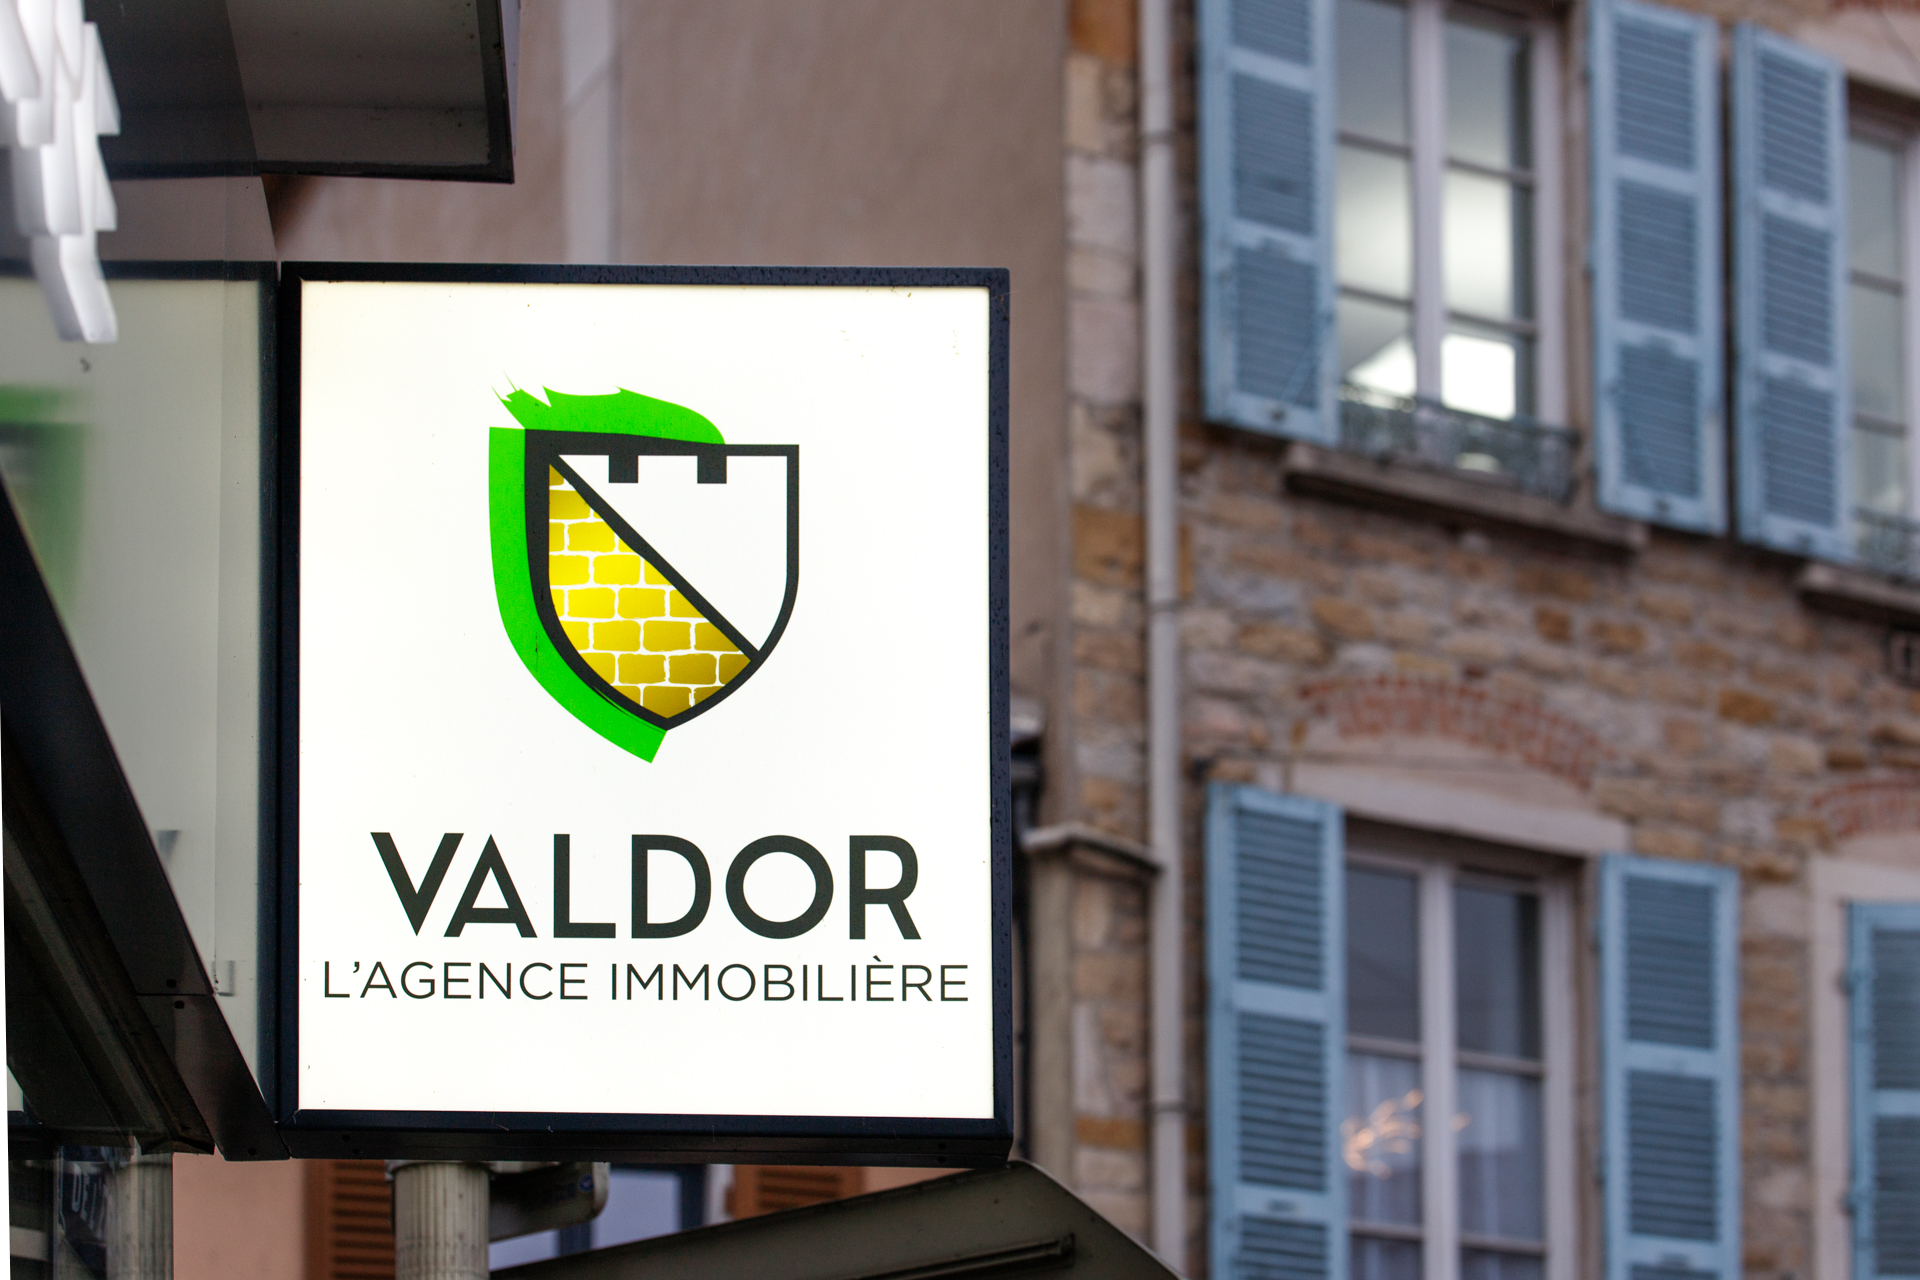 Valdor L'agence Immobilière Lyon